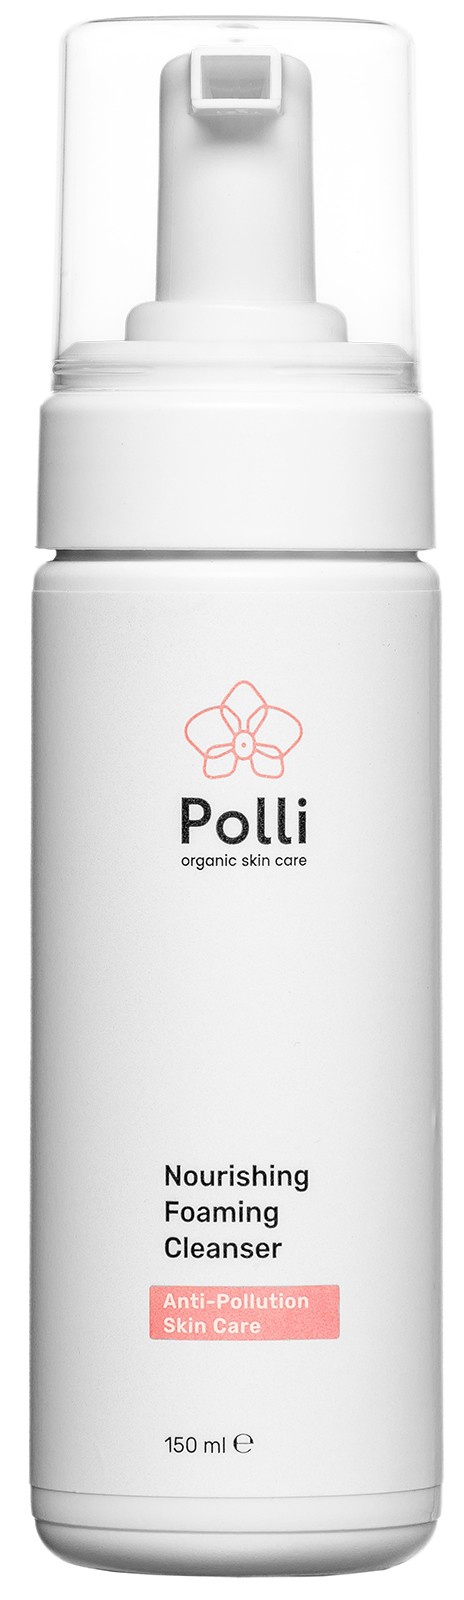 фото Пенка для умывания лица Polli Organic Skin Care ухаживающая, 150 мл